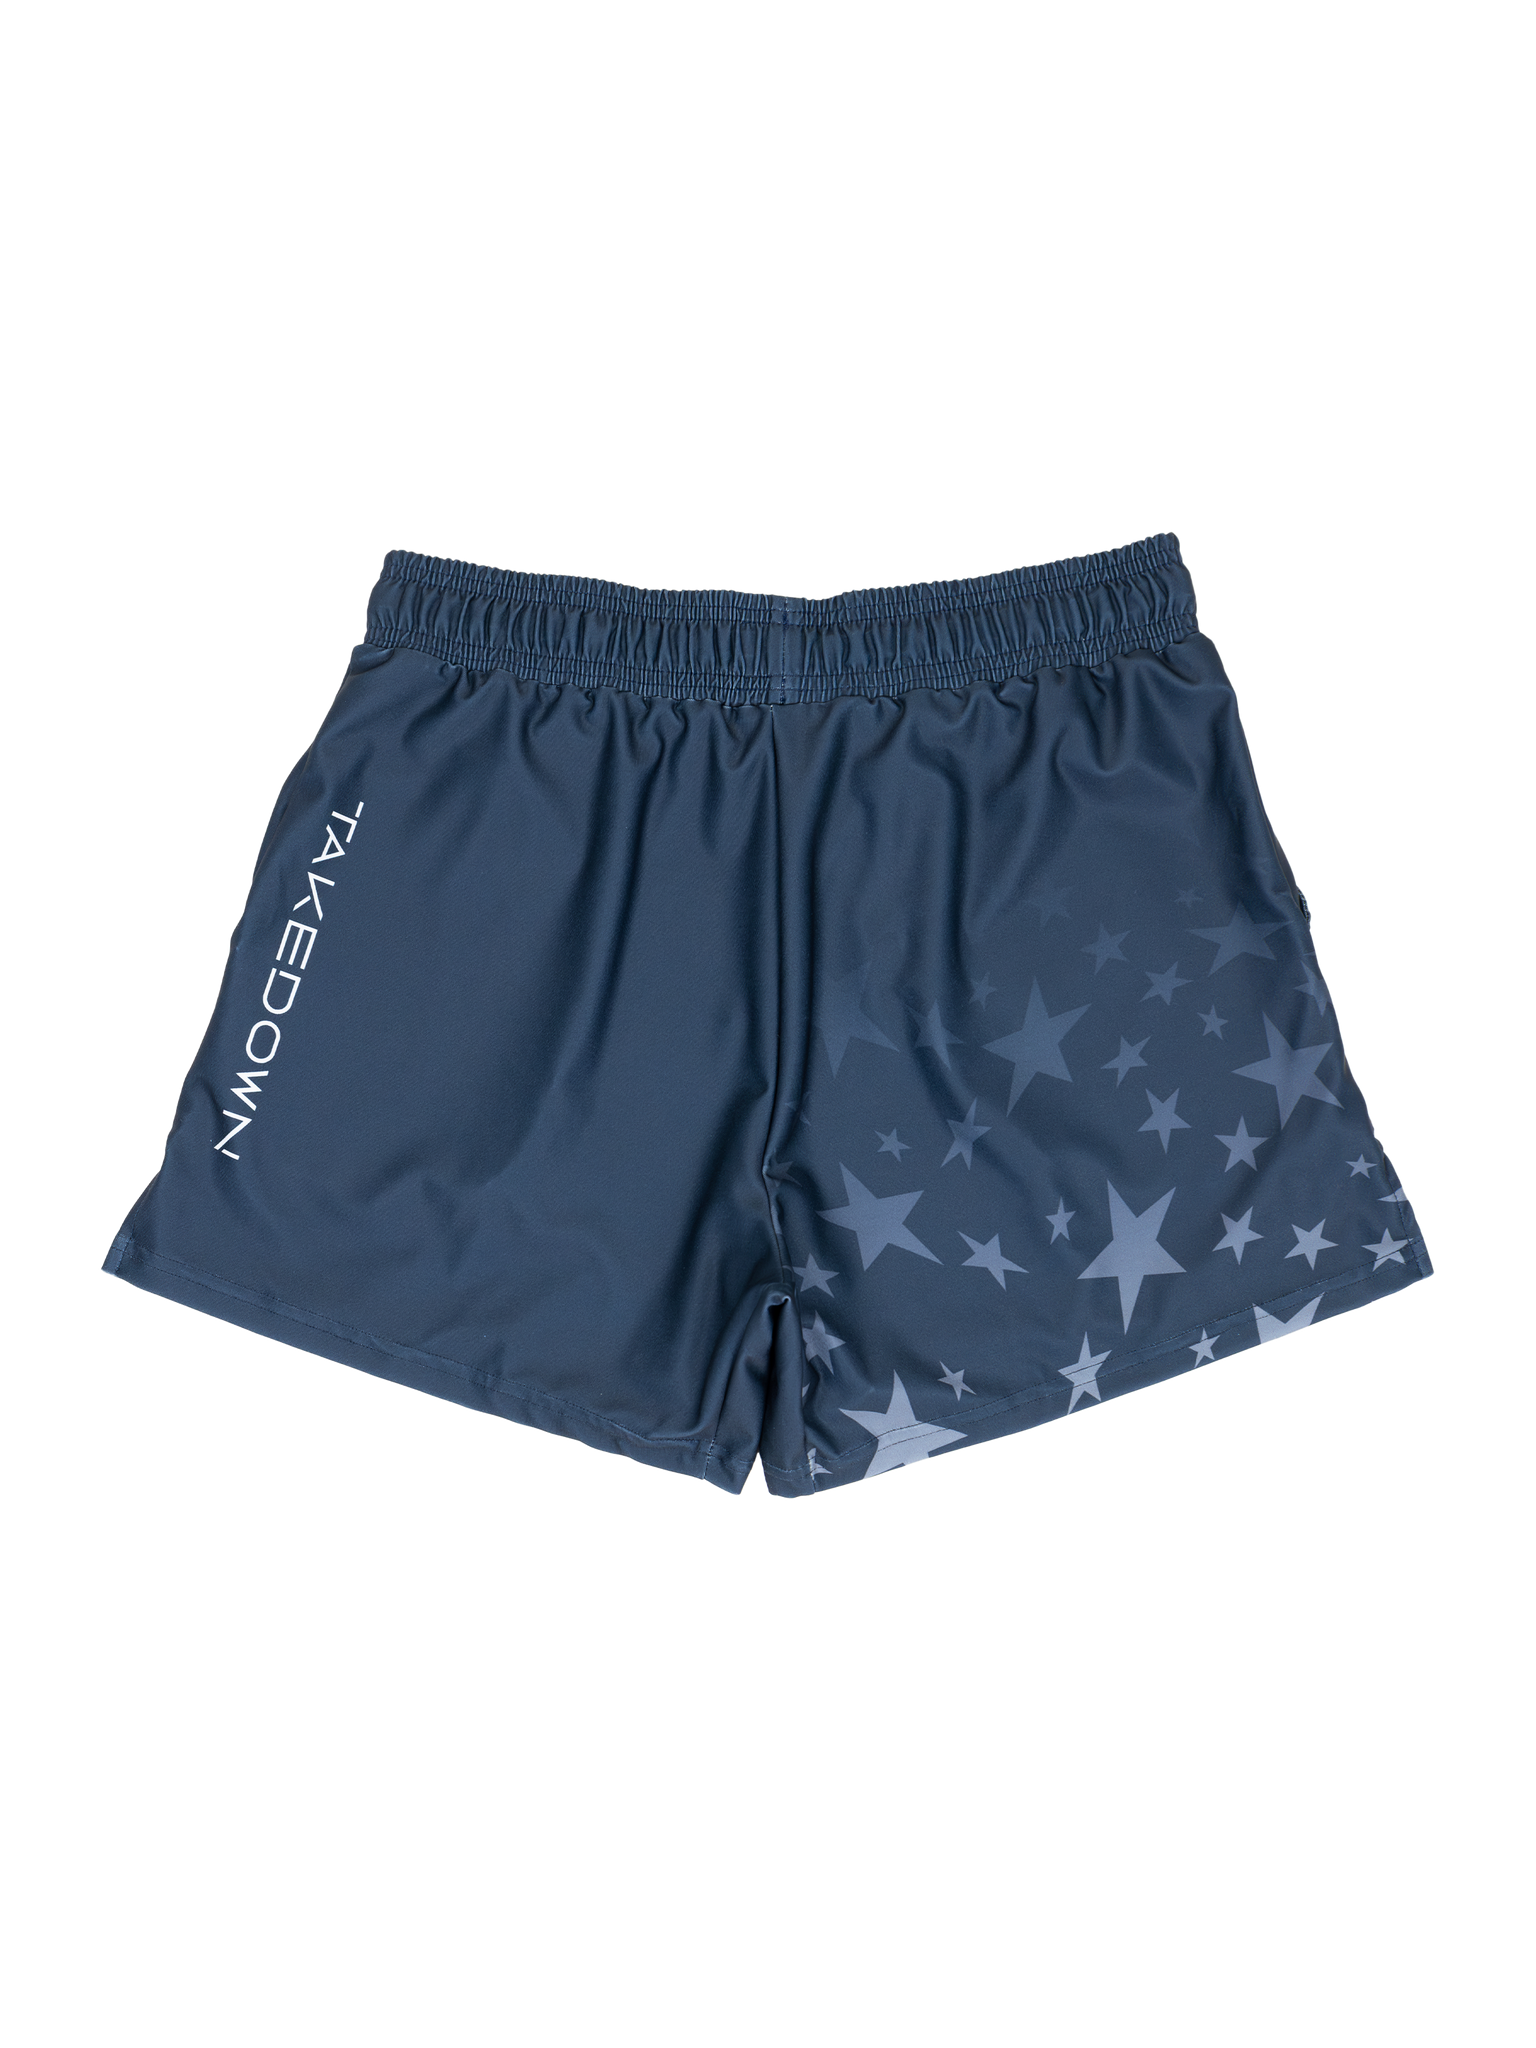 Gym Star Gym Shorts - Navy (5"&7" Inseam)